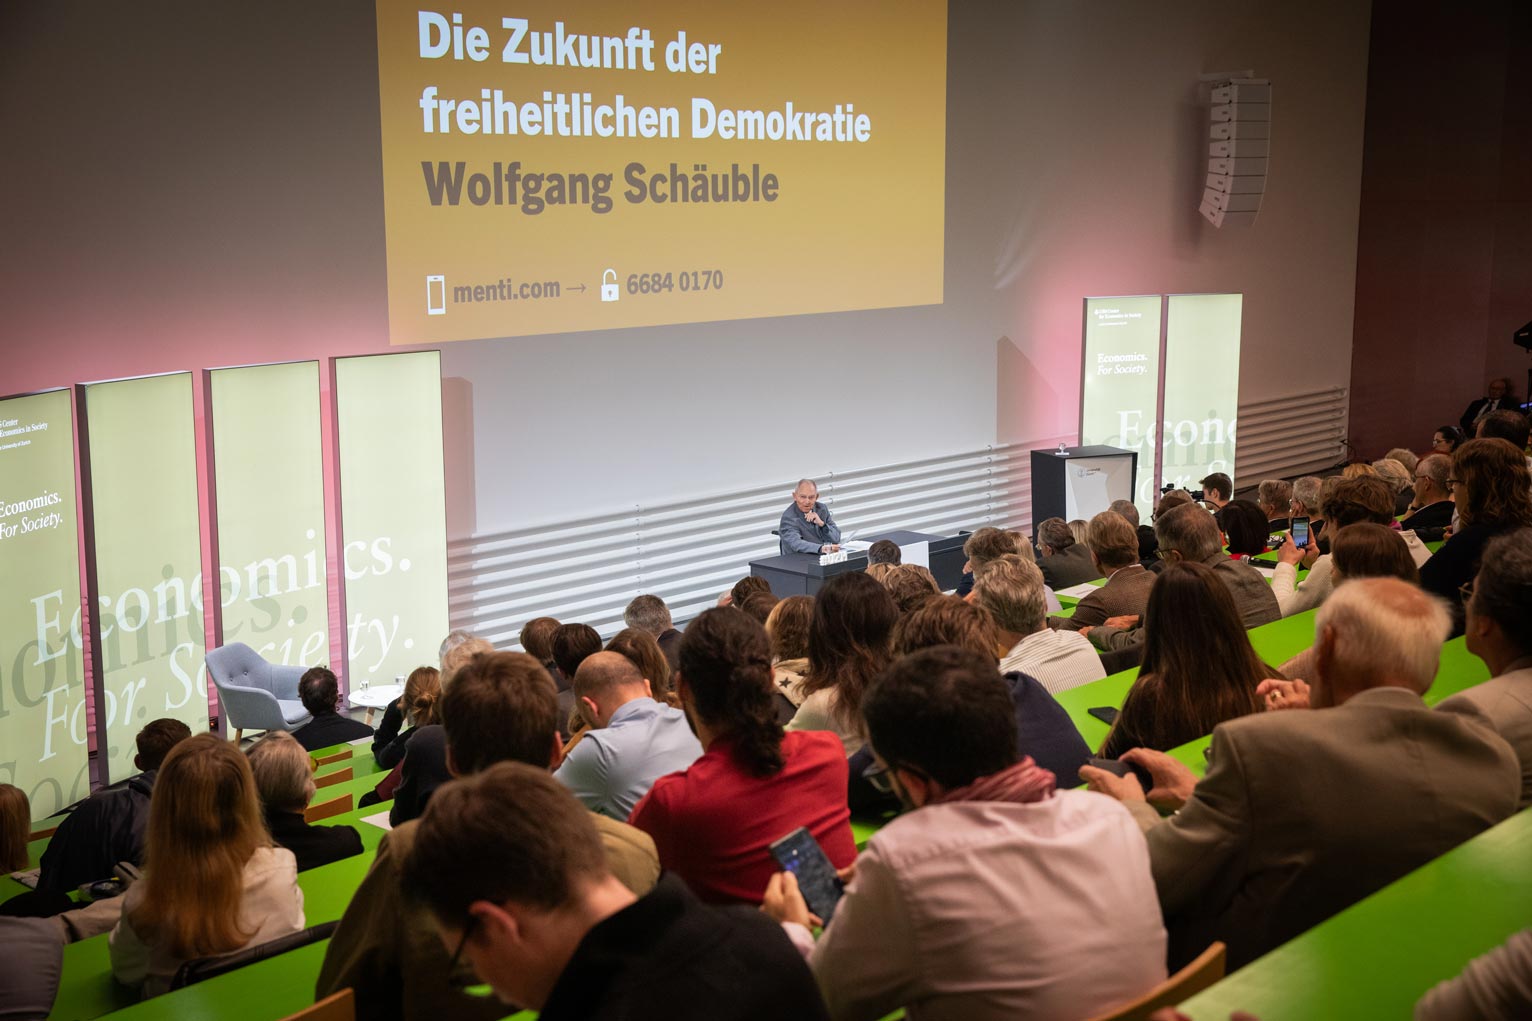 Wolfgang Schäuble during his speech at Universität Zürich © Ueli Christoffel / UBS Center